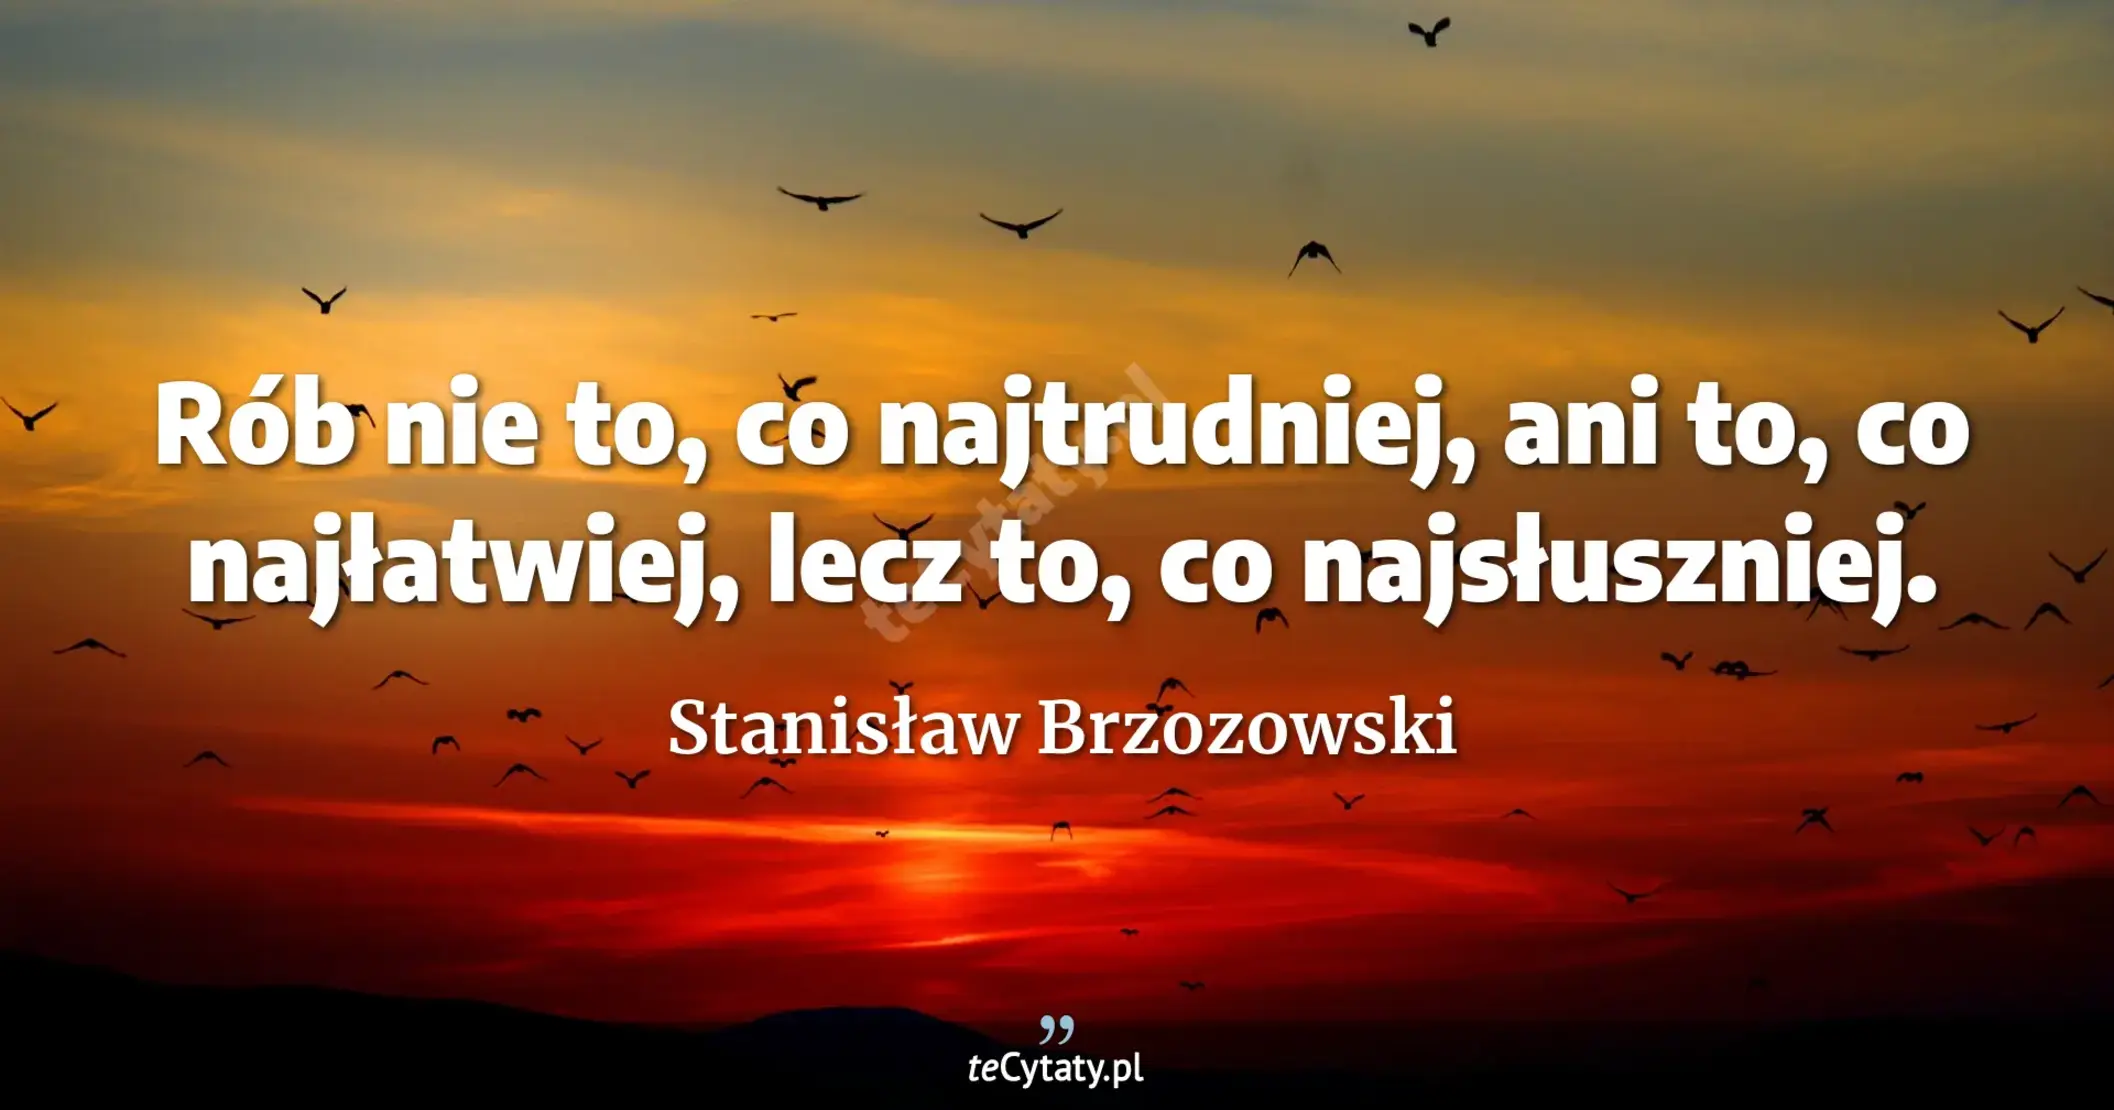 Rób nie to, co najtrudniej, ani to, co najłatwiej, lecz to, co najsłuszniej. - Stanisław Brzozowski